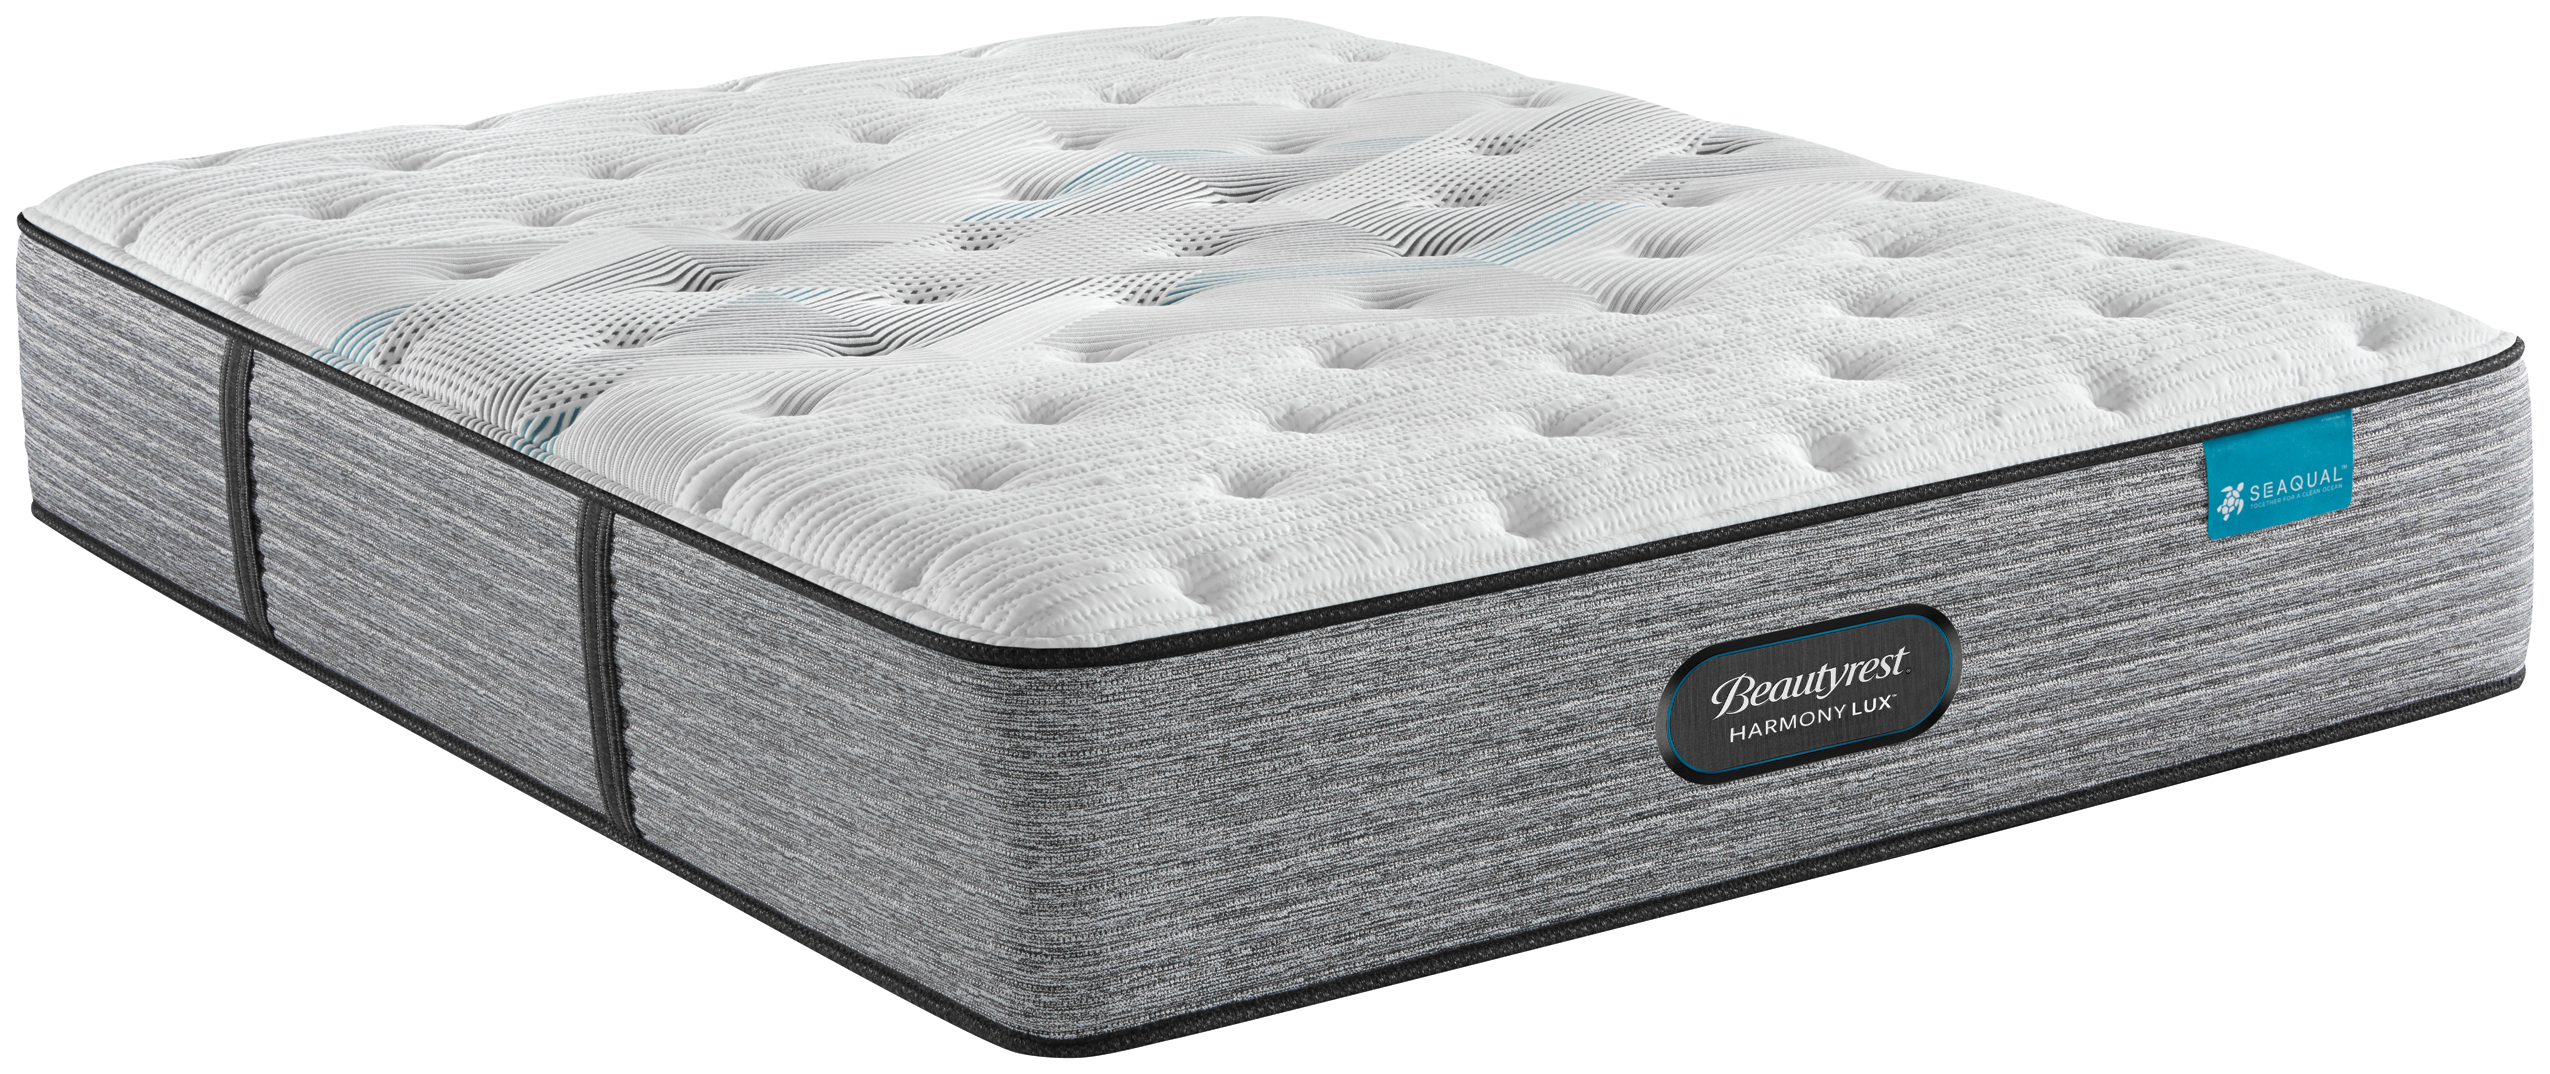 beautyrest extra firm queen mattress